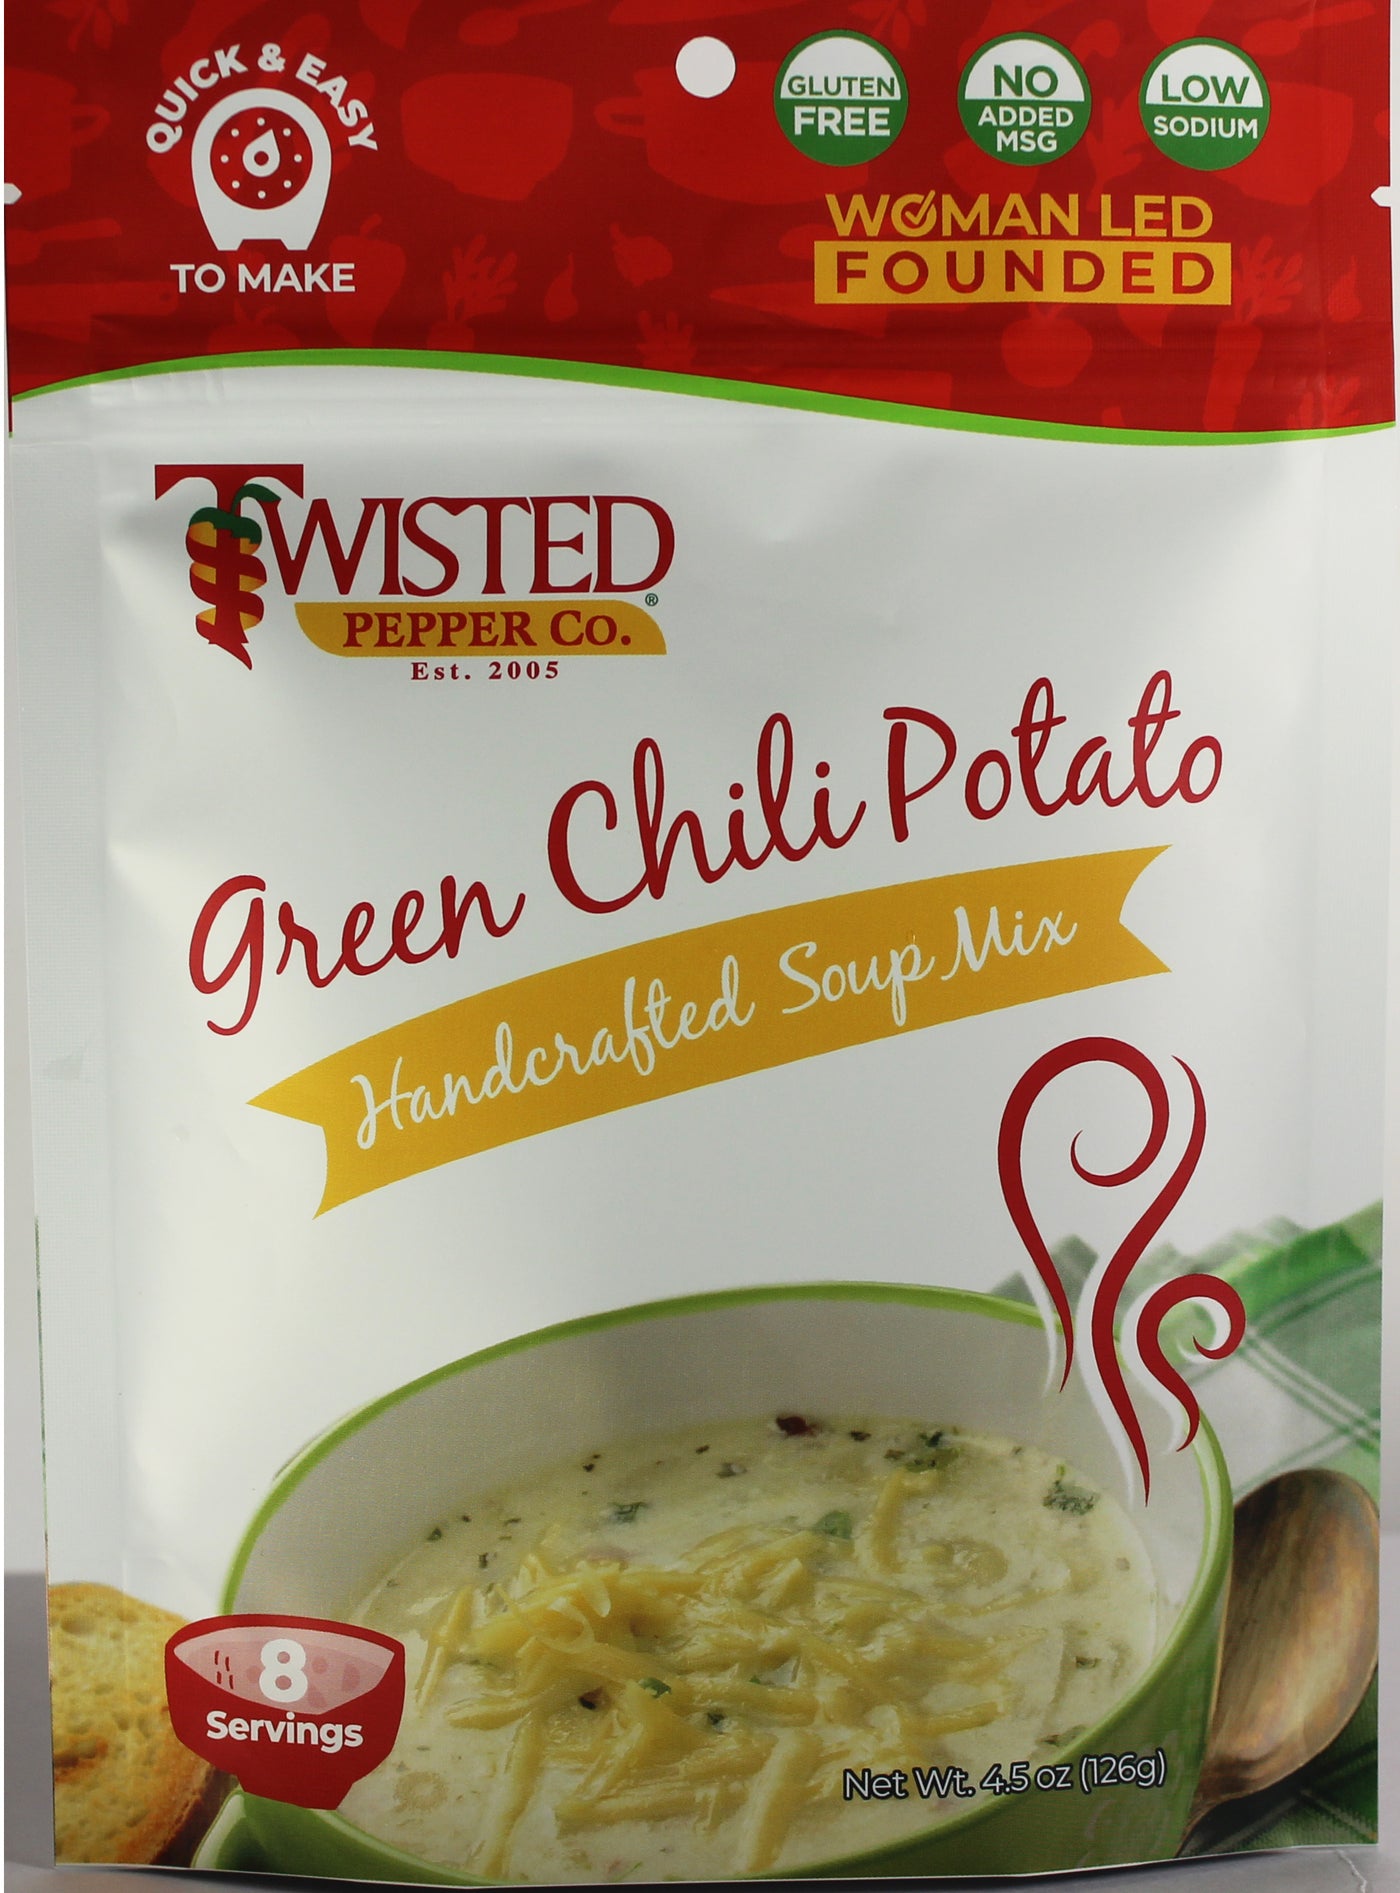 Green Chile Potato Dry Soup Mix